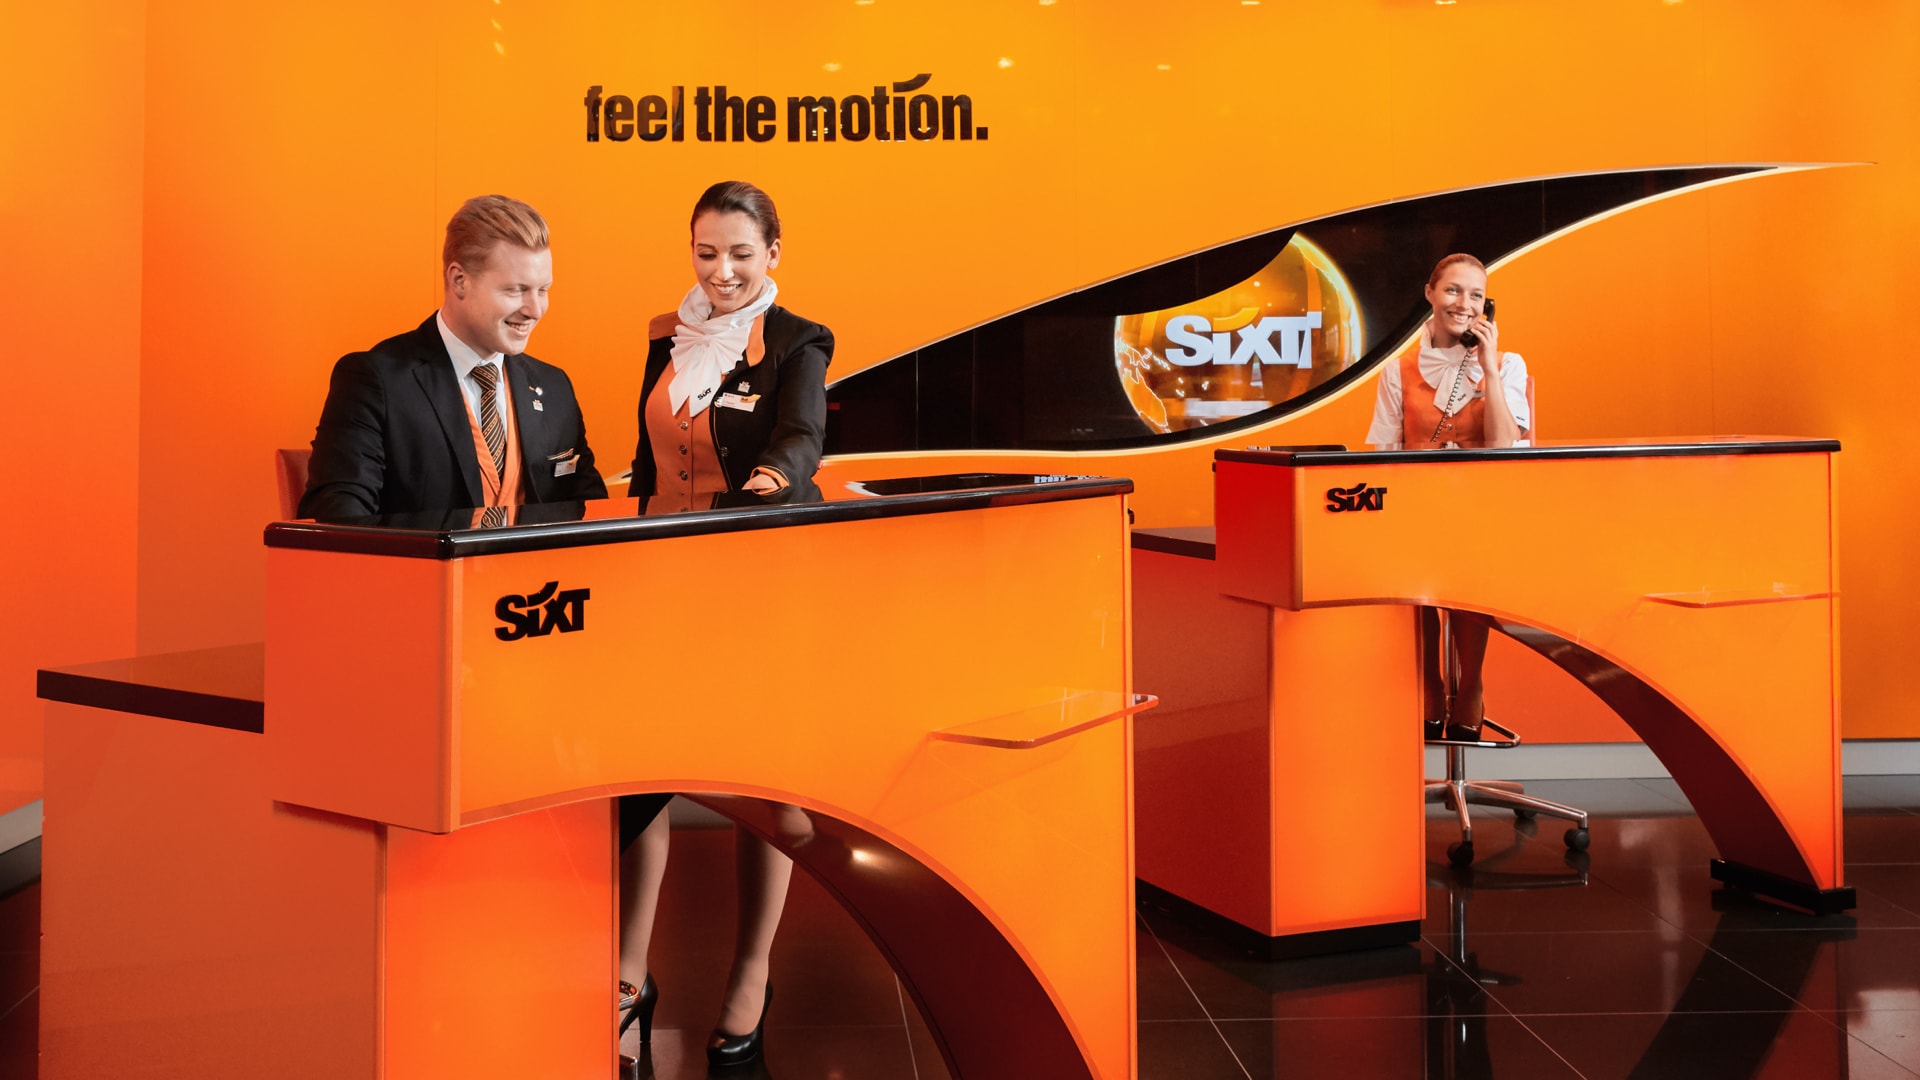 Trois employés de Sixt, habillés en noir et orange, travaillent devant un mur orange sur lequel est écrit en noir « feel the motion ».